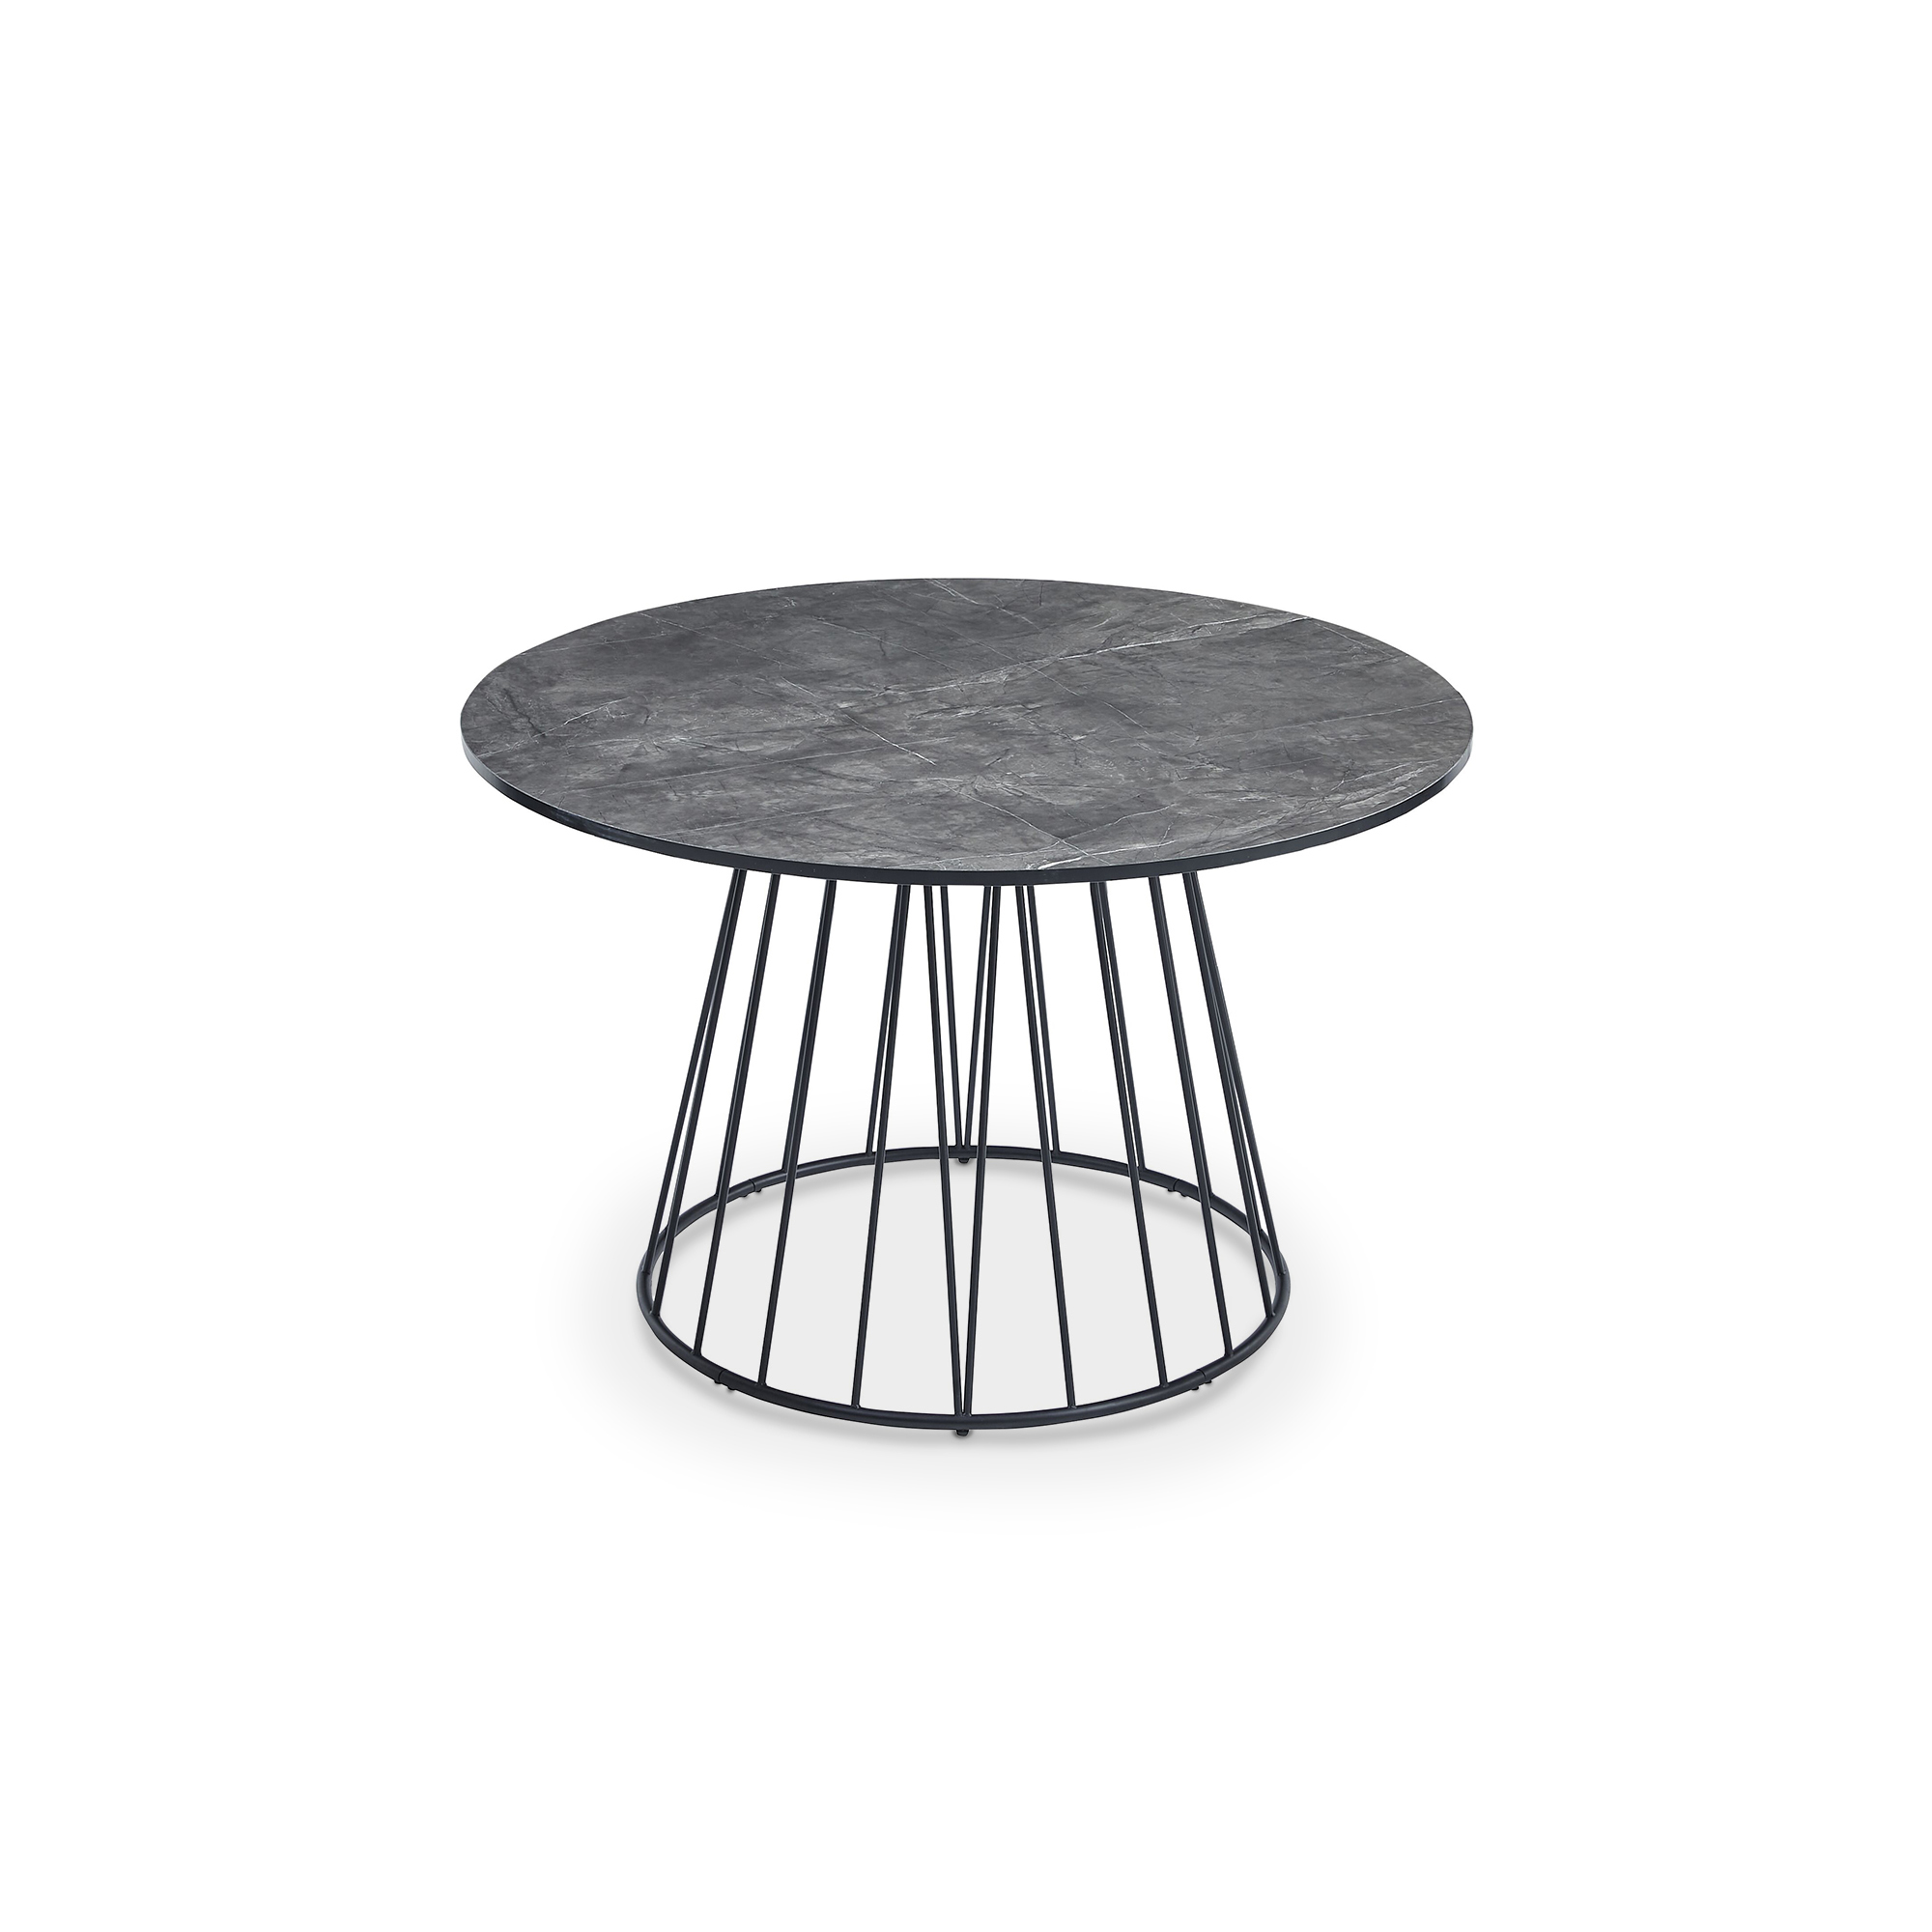 Table à manger ronde effet marbre gris pied central design métal noir